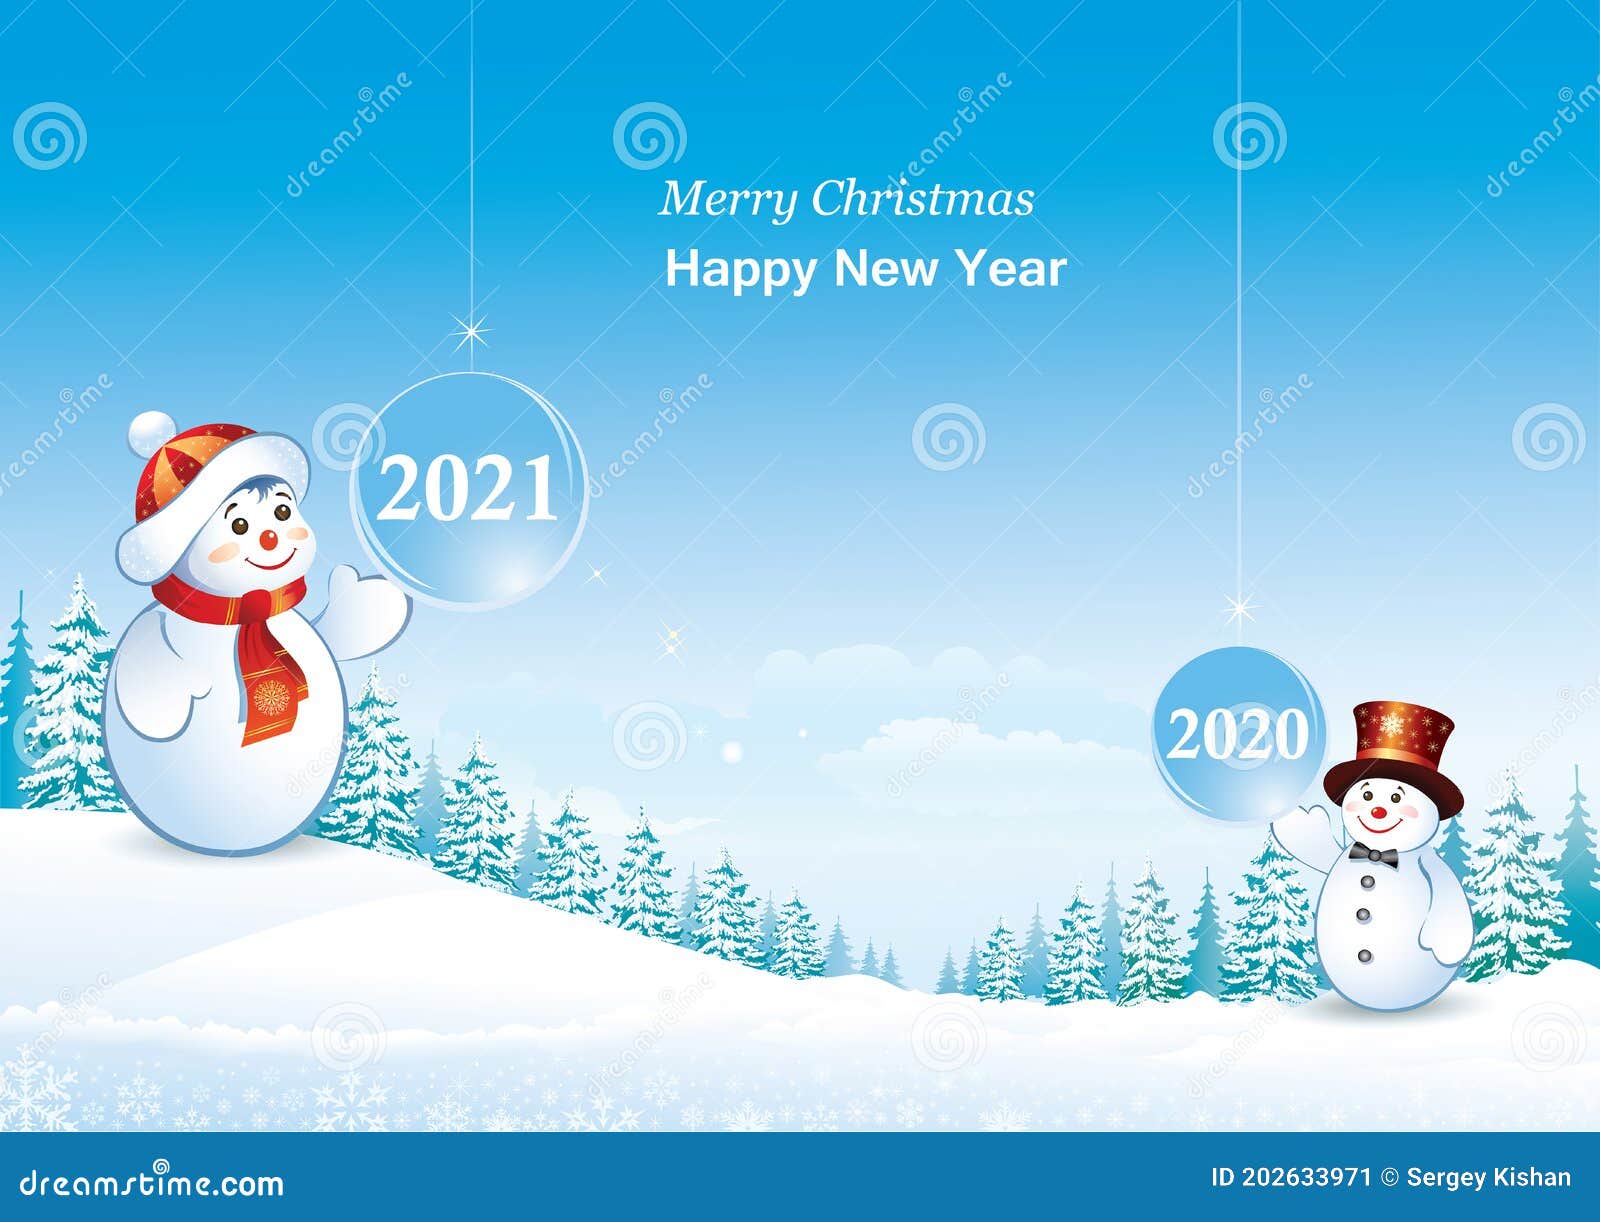 ilustração de pessoas festejando e dando as boas-vindas ao novo ano de 2022  a 2023